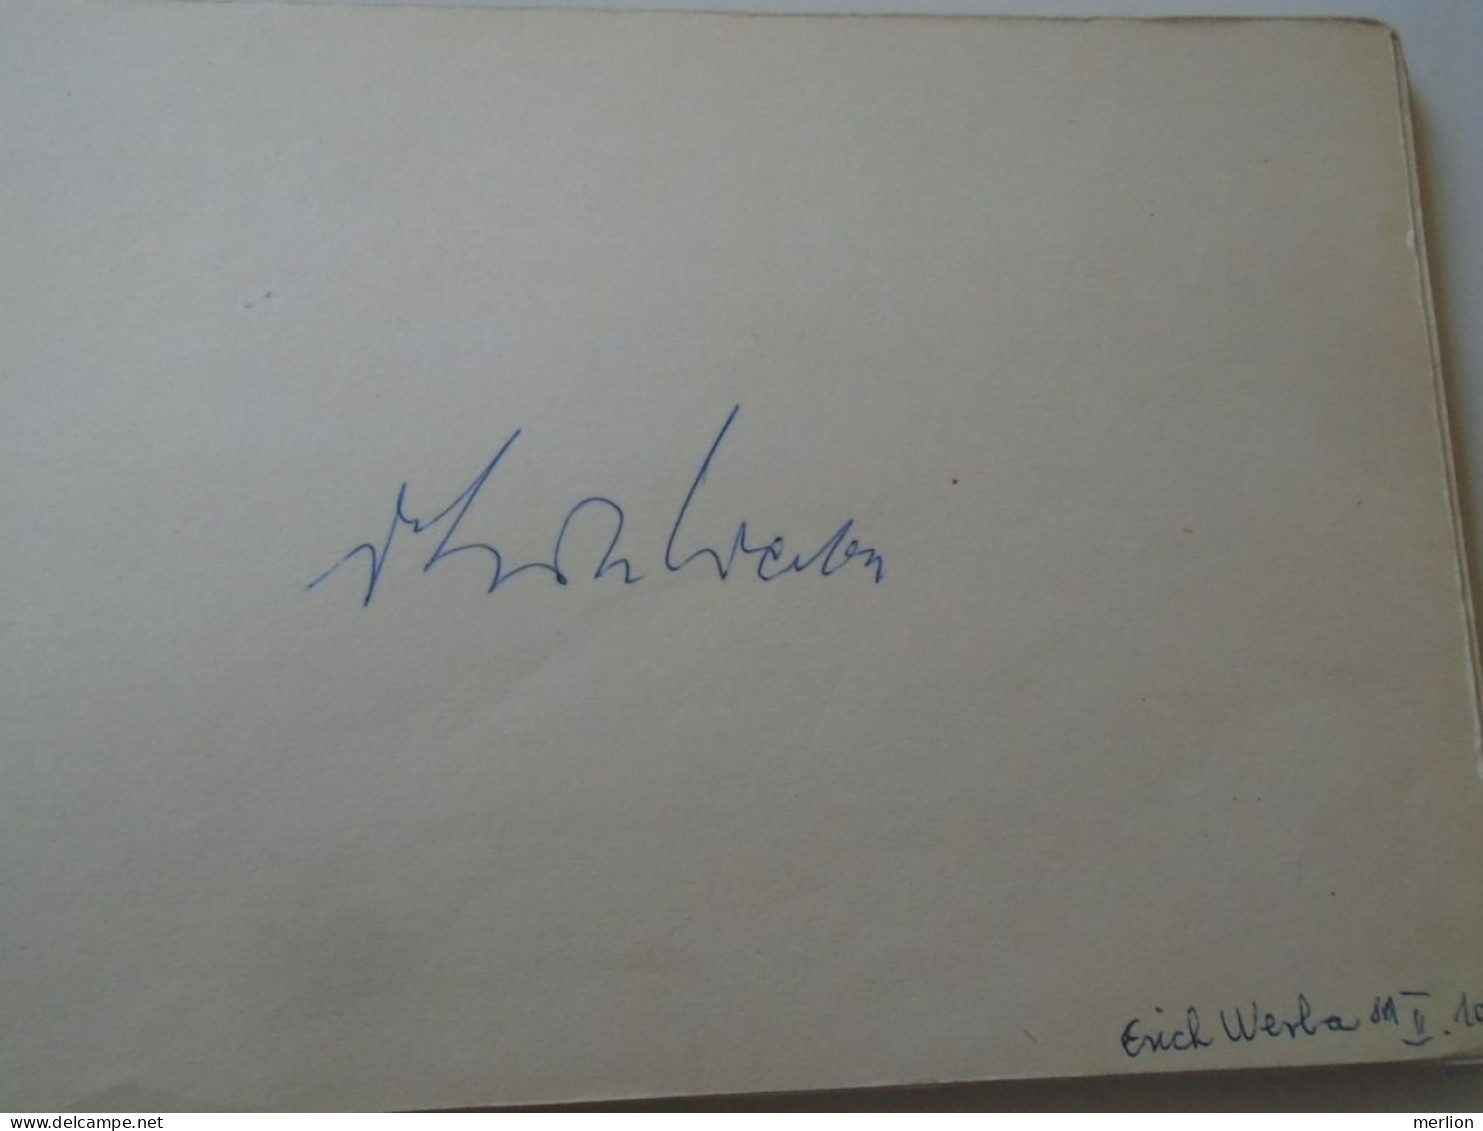 D203324  Signature -Autograph  - Erik ERICH WERBA  - Austrian Pianist Composer  Baden Bei Wien  1981 - Chanteurs & Musiciens